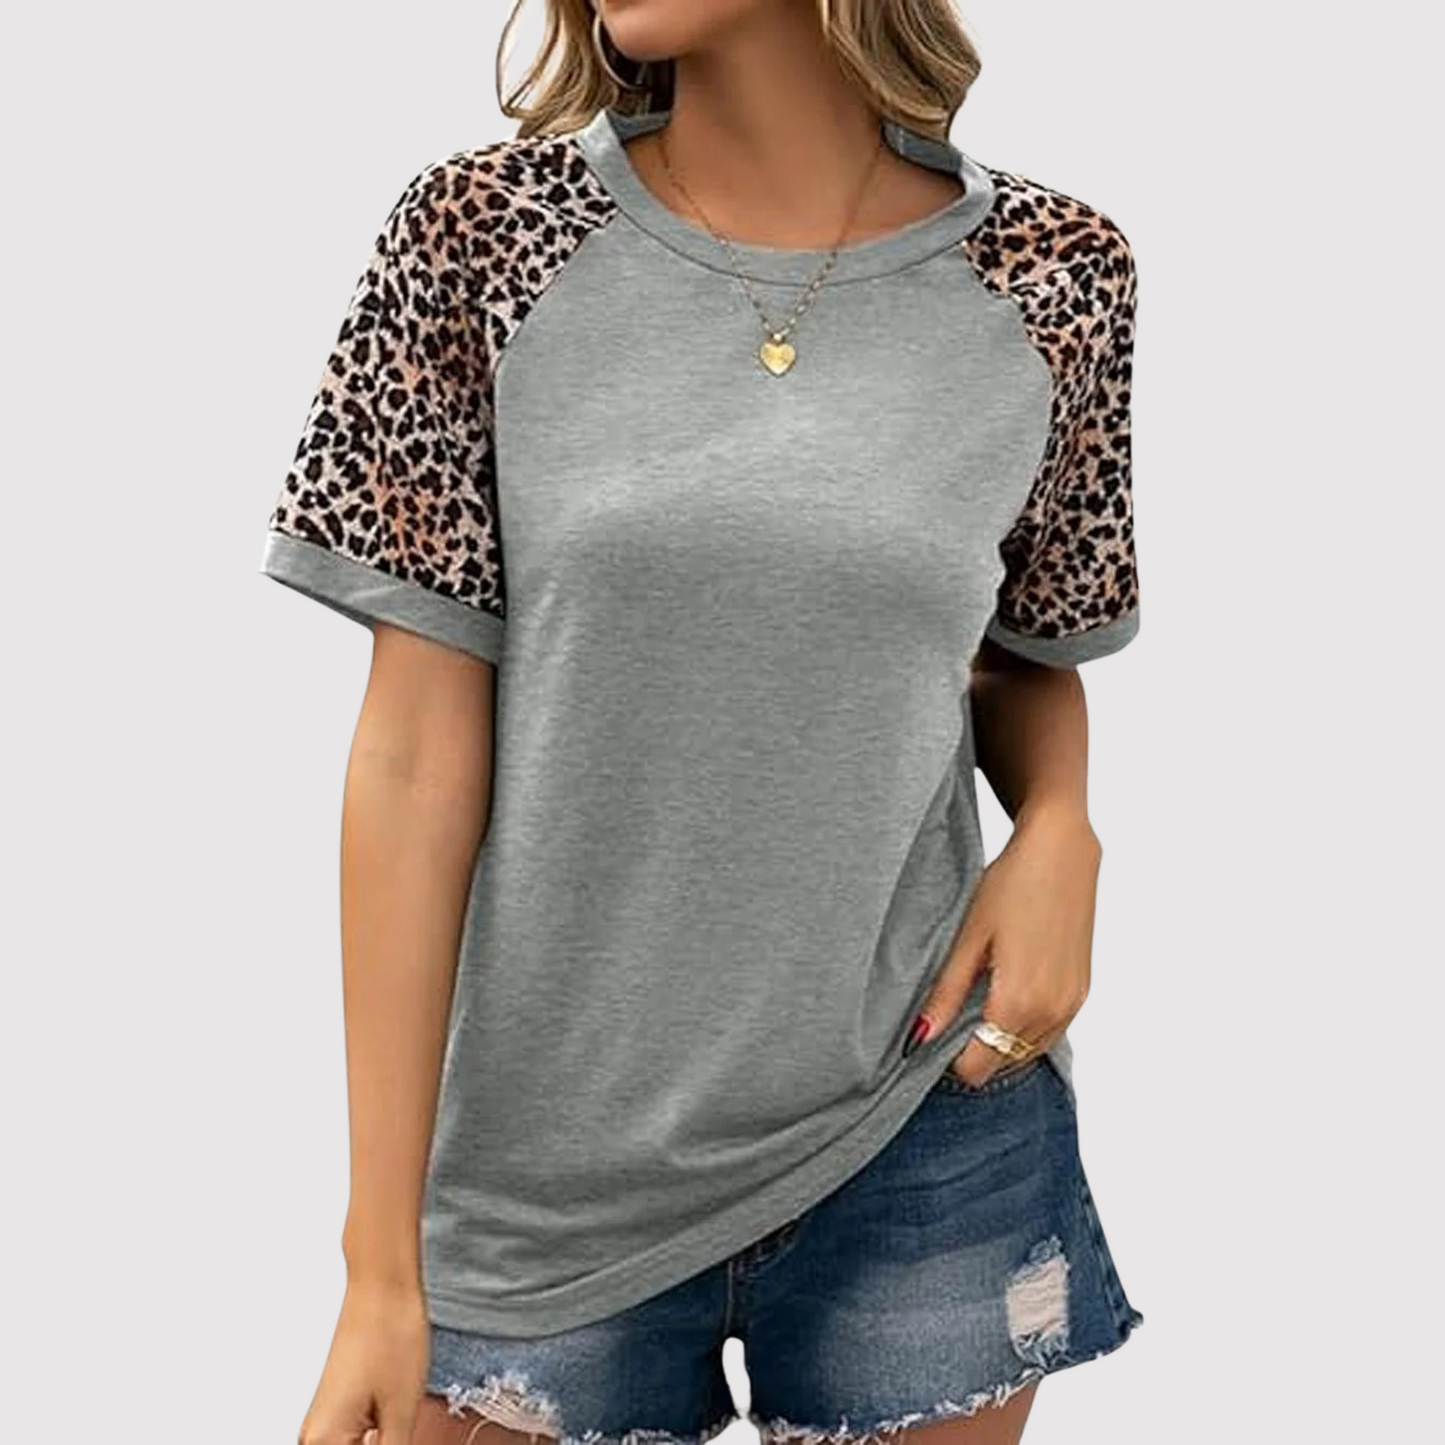 Elsie - Rundhals-Shirt mit Leopardenmuster